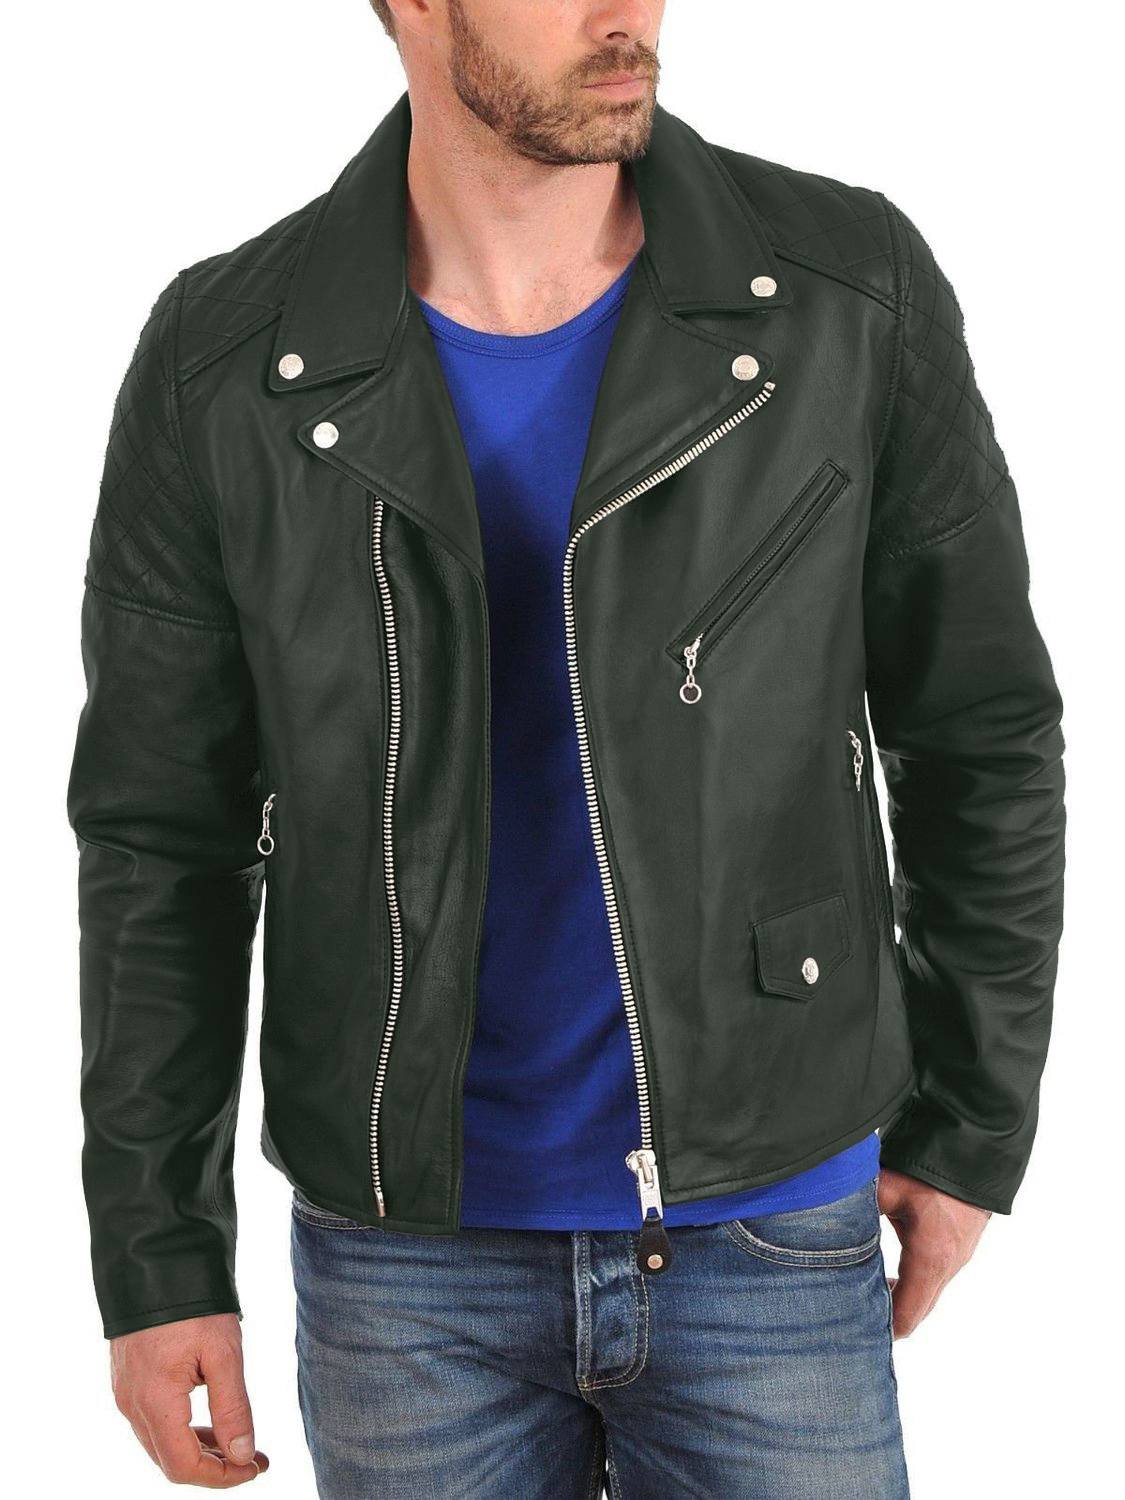 Leather Jackets Hub Mens Genuine Lambskin Leather Jacket (Black, Double Rider Jacket) - 1501001